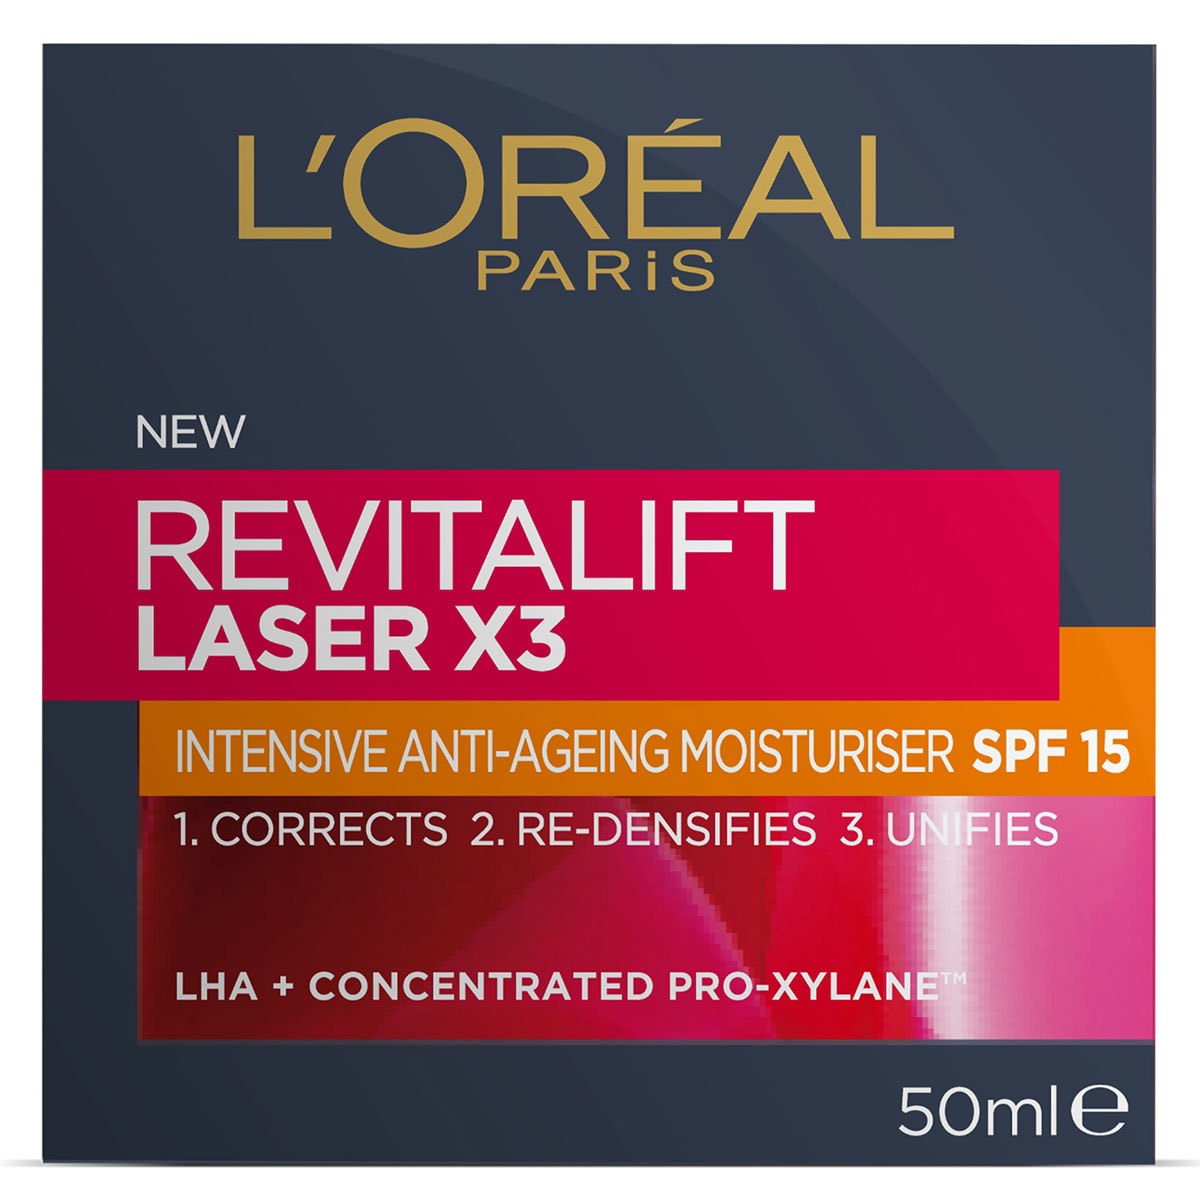 L'Oreal Revitalift Laser X3 Moisturiser SPF15 50ml